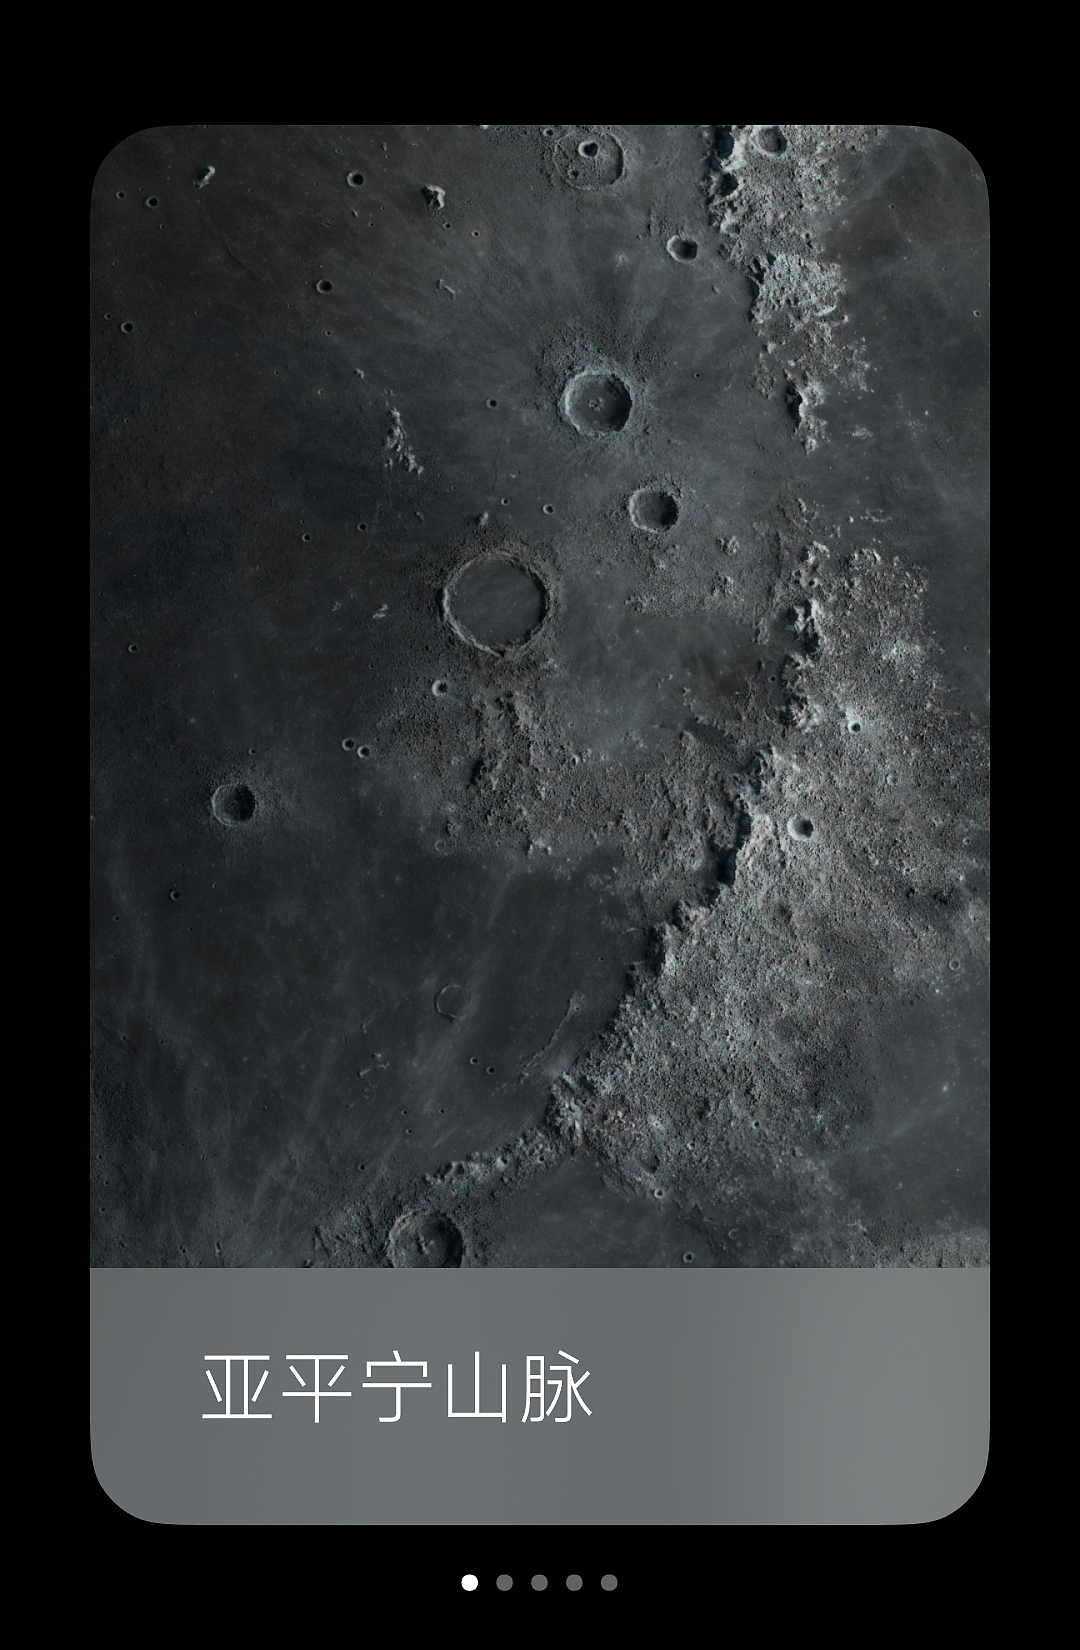 小米超级壁纸新增“月球”主题：基于澎湃 OS 图形子系统，内存占用大幅降低 - 3